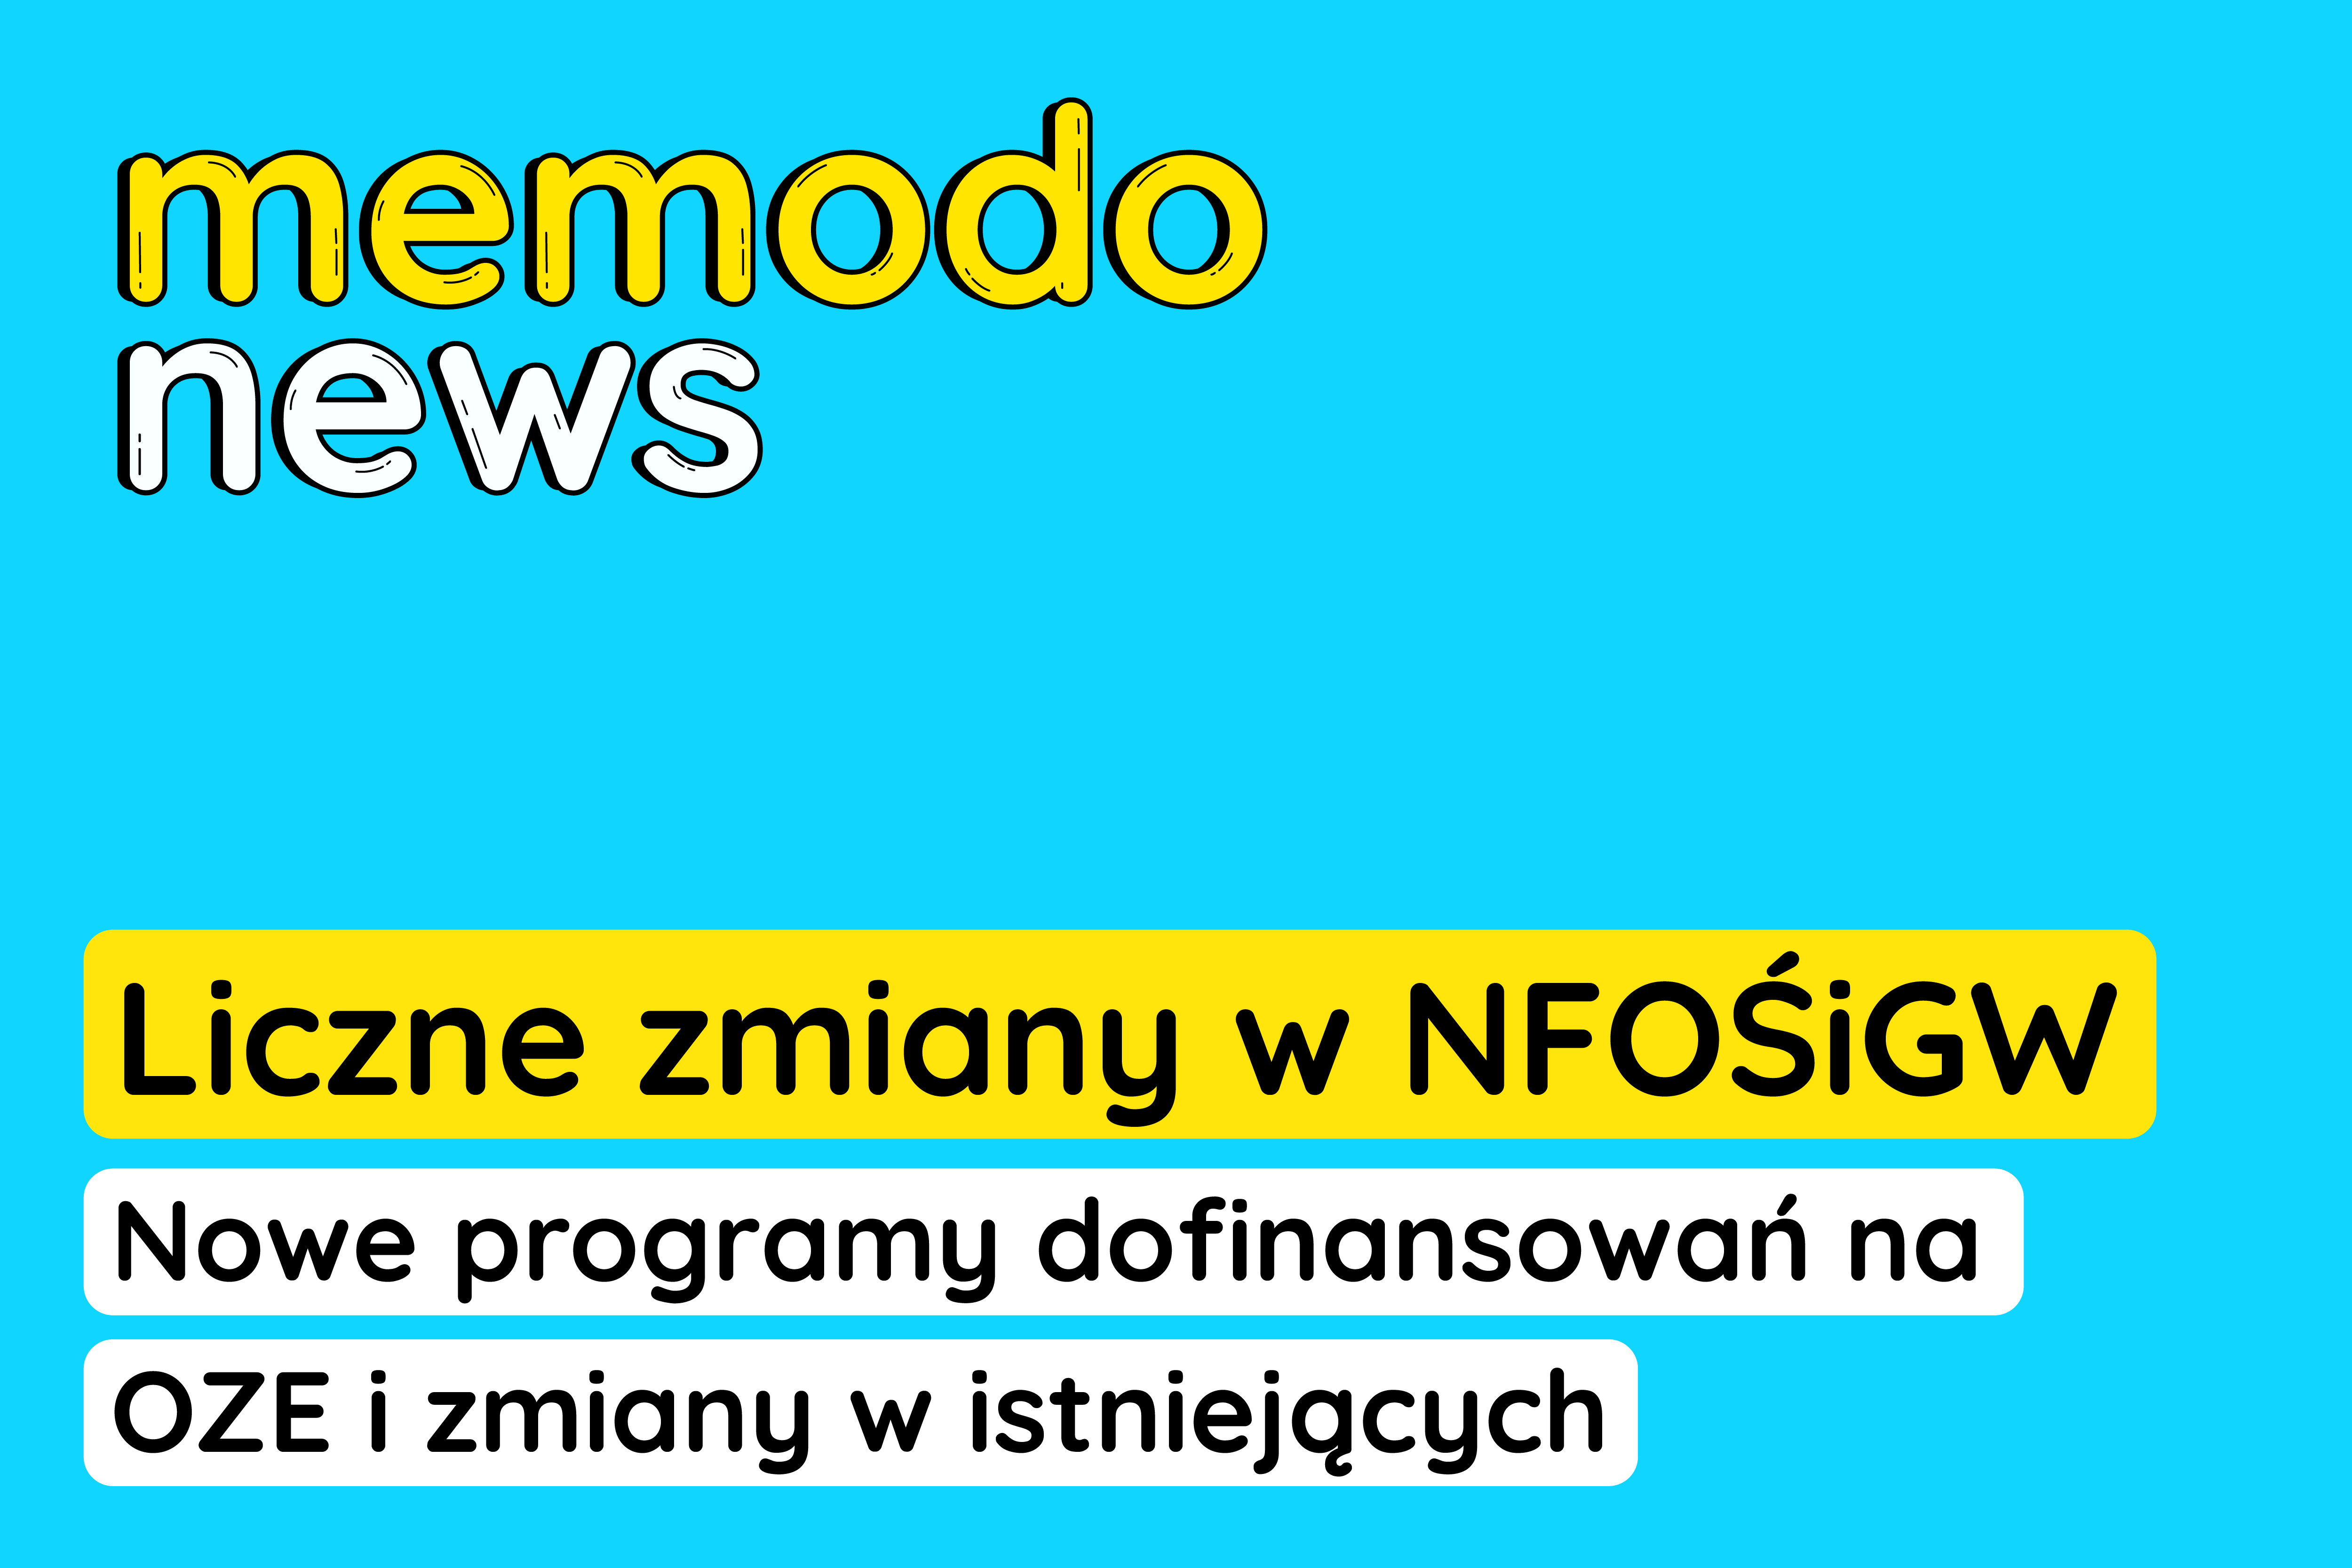 Memodo News 23.02